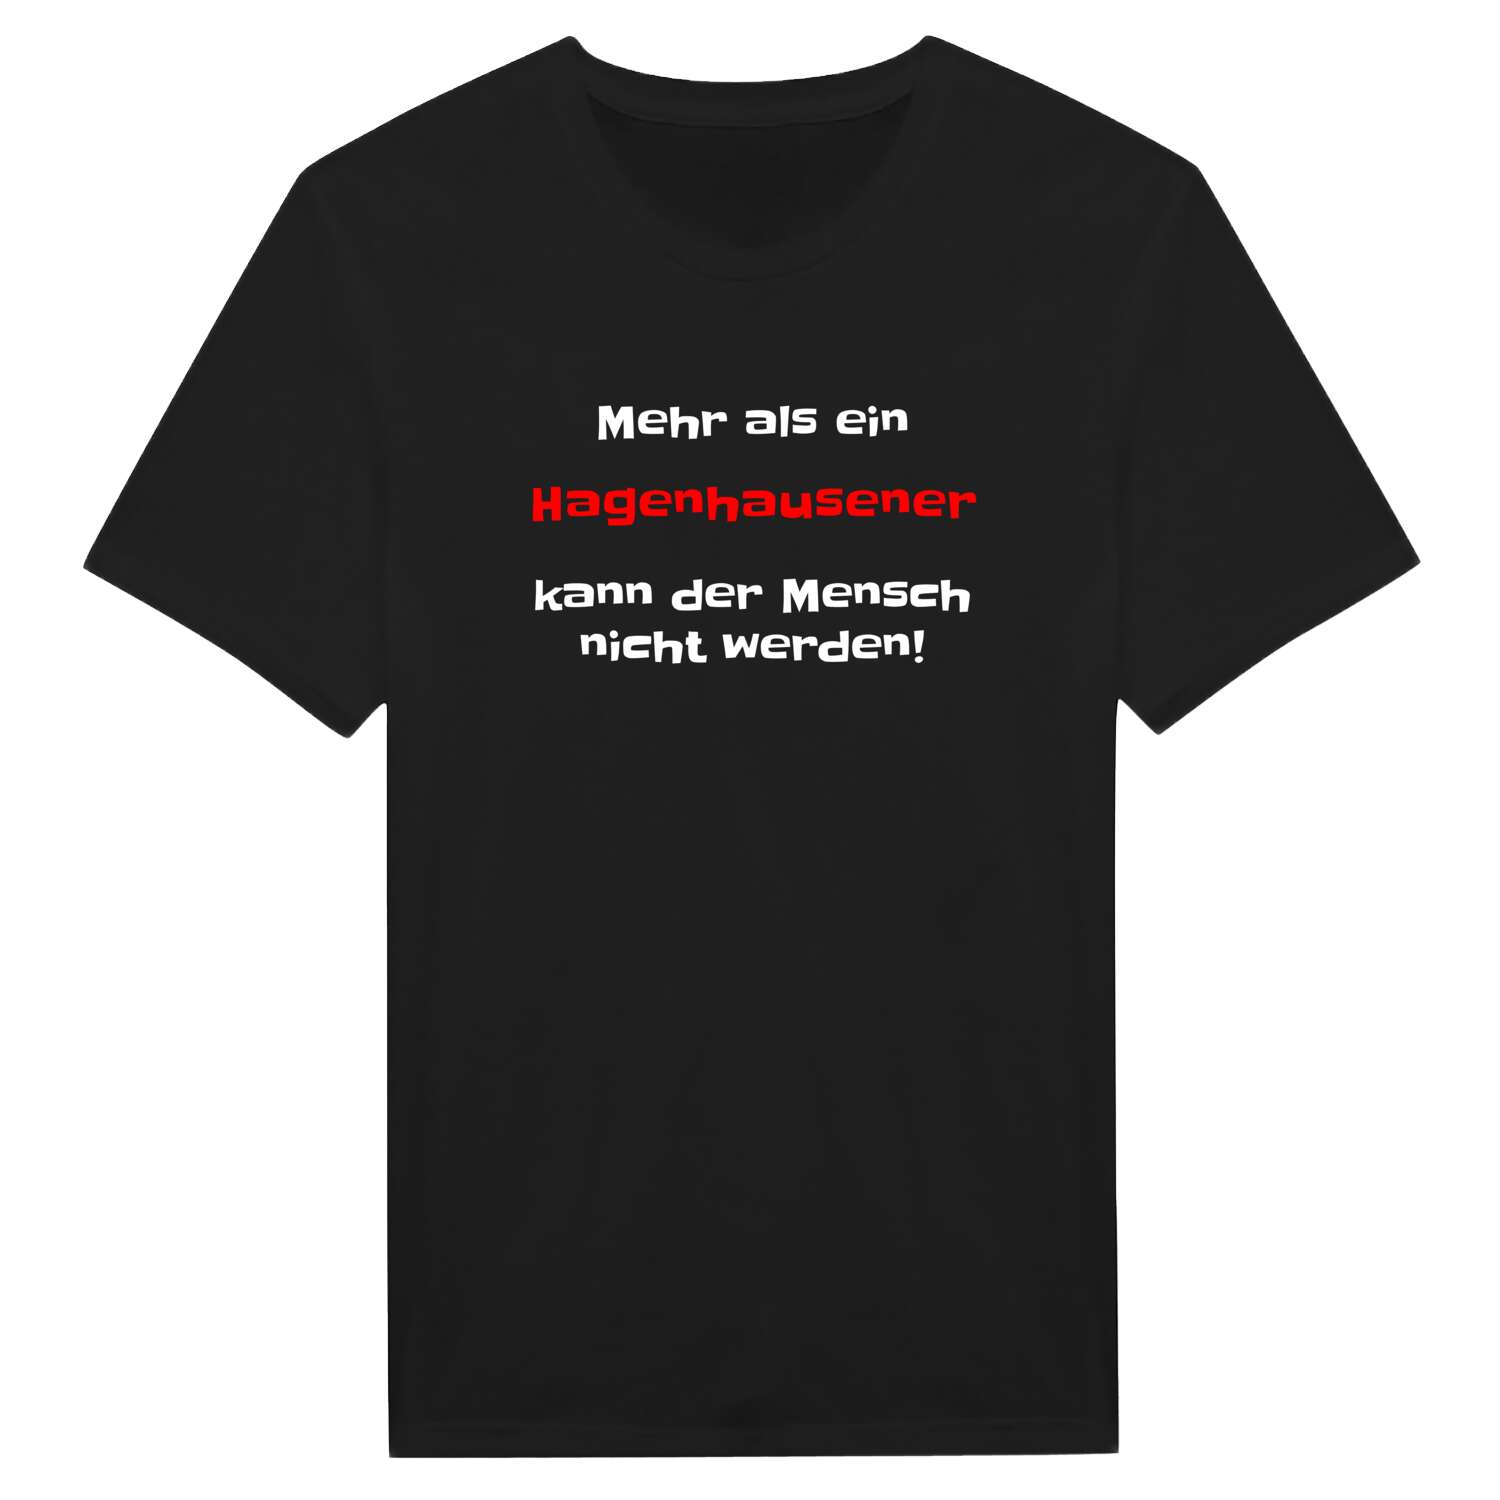 Hagenhausen T-Shirt »Mehr als ein«